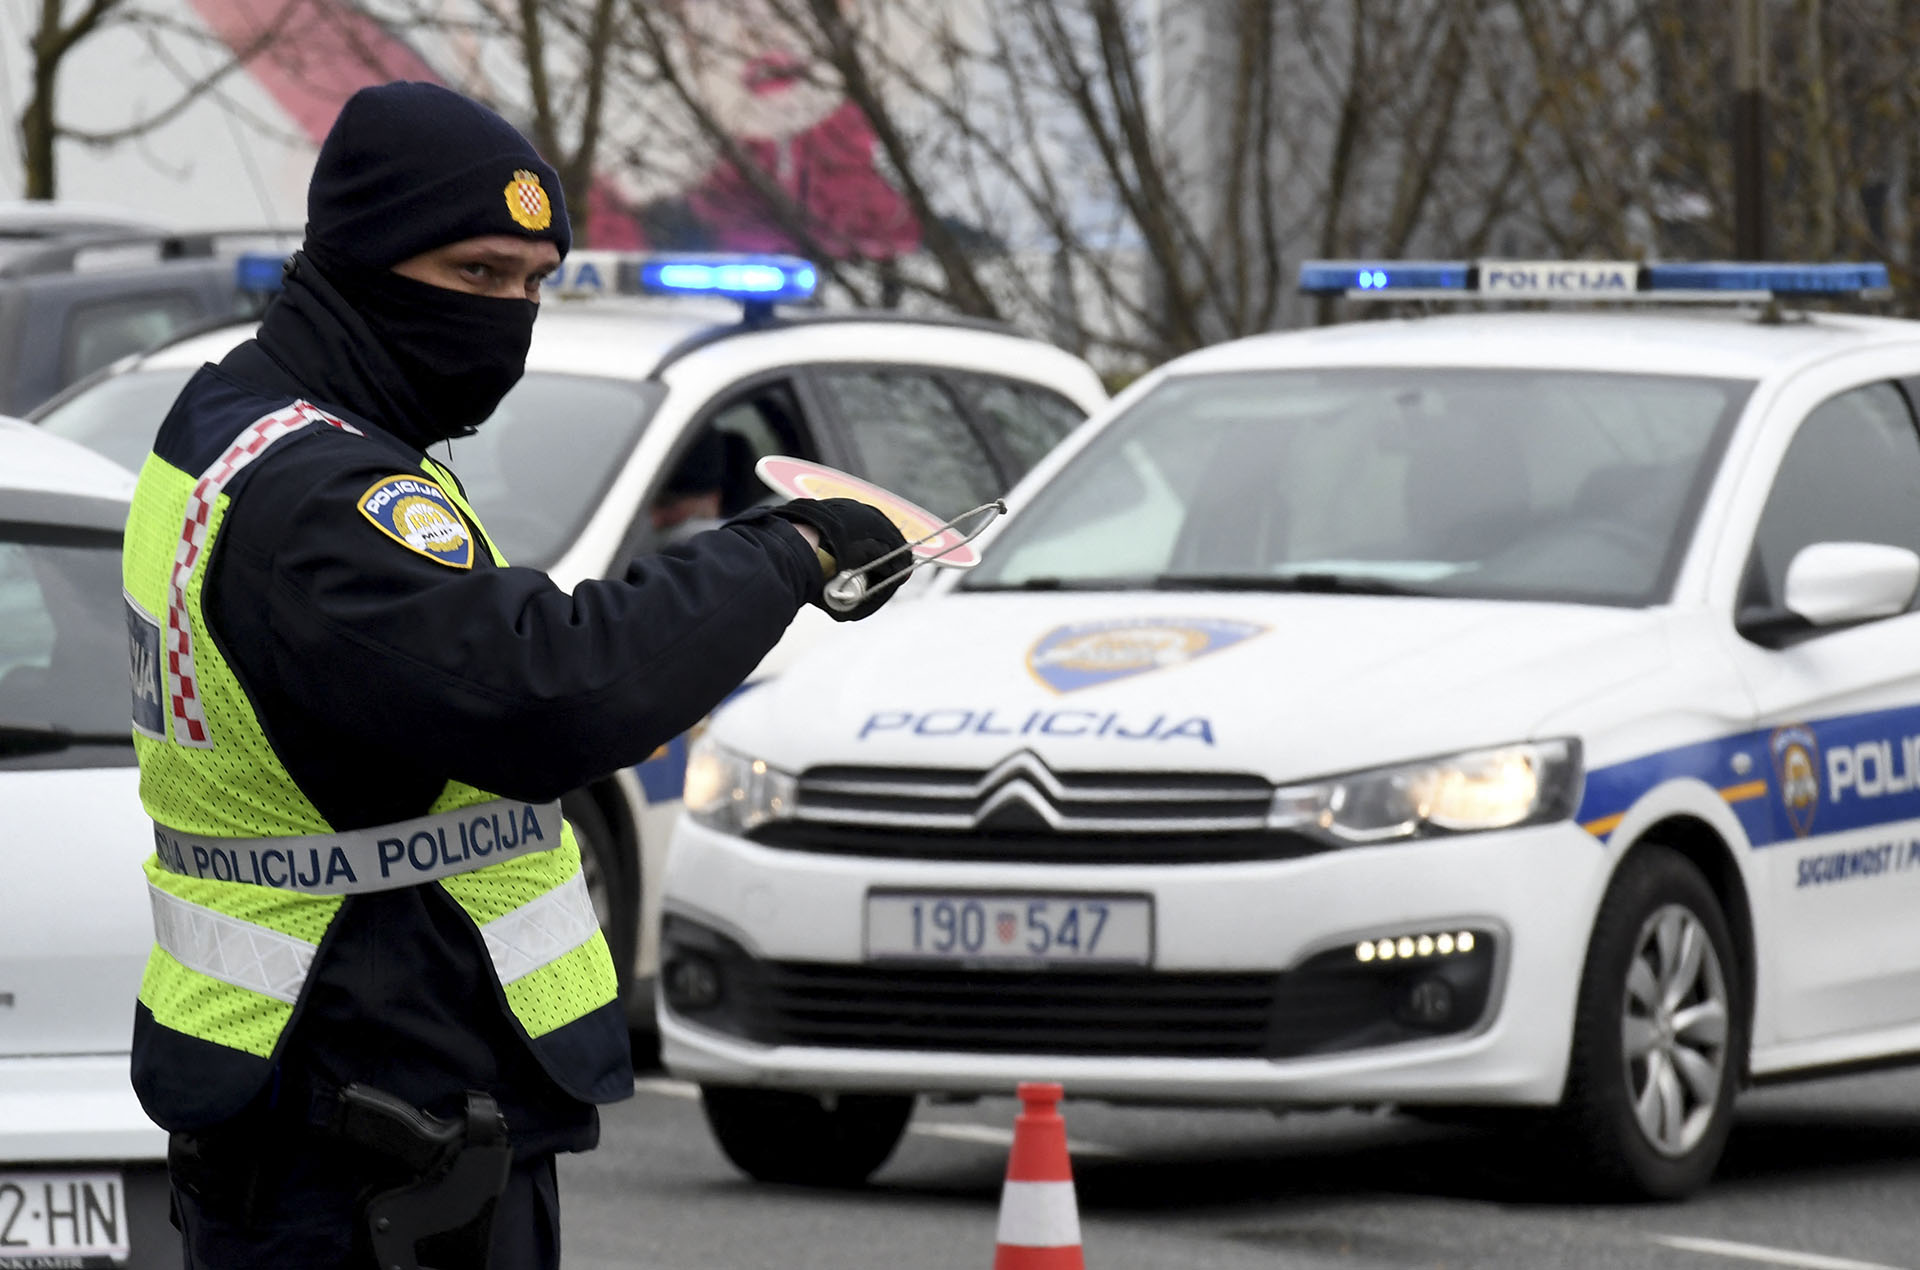 5 éves kisfiú holttestét találták meg egy horvátországi parkolóban